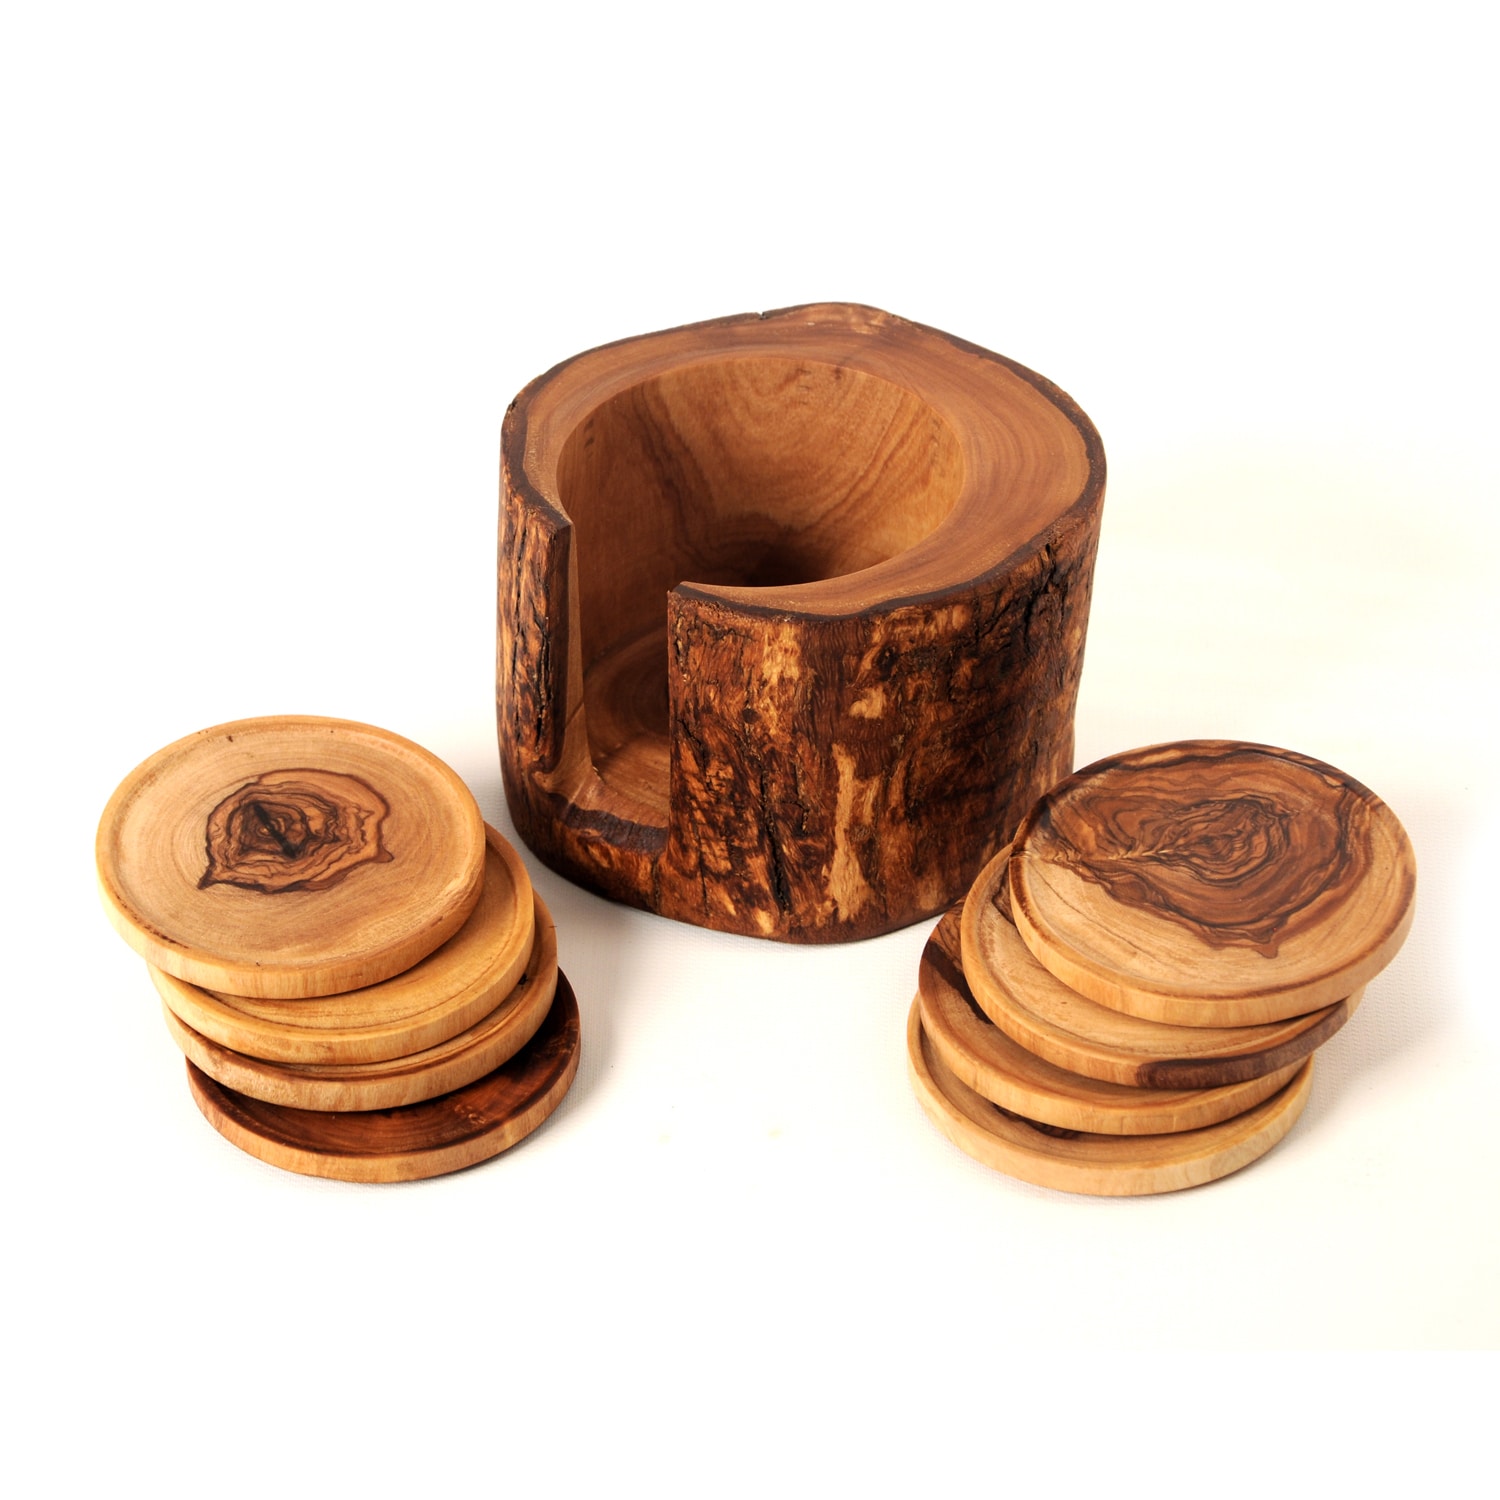 Olive Wood Coasters, Free Form, Round Hardwood Coasters, Set of 4, Handmade Rustic  Coasters 